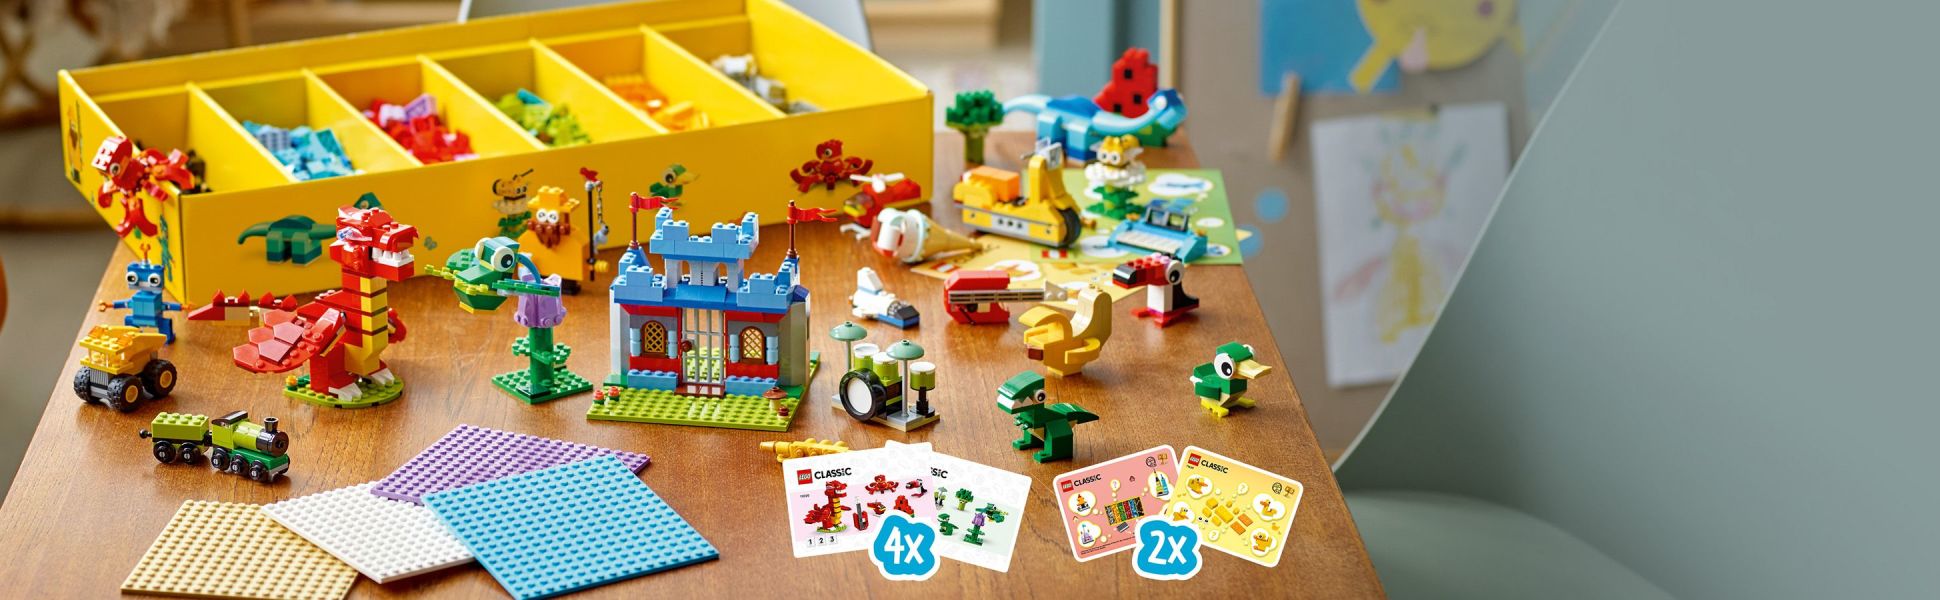 LEGO Classic Build Together 11020 - Juego de juguetes de construcción  creativa para niños, niñas y niños a partir de 5 años (1,601 piezas)